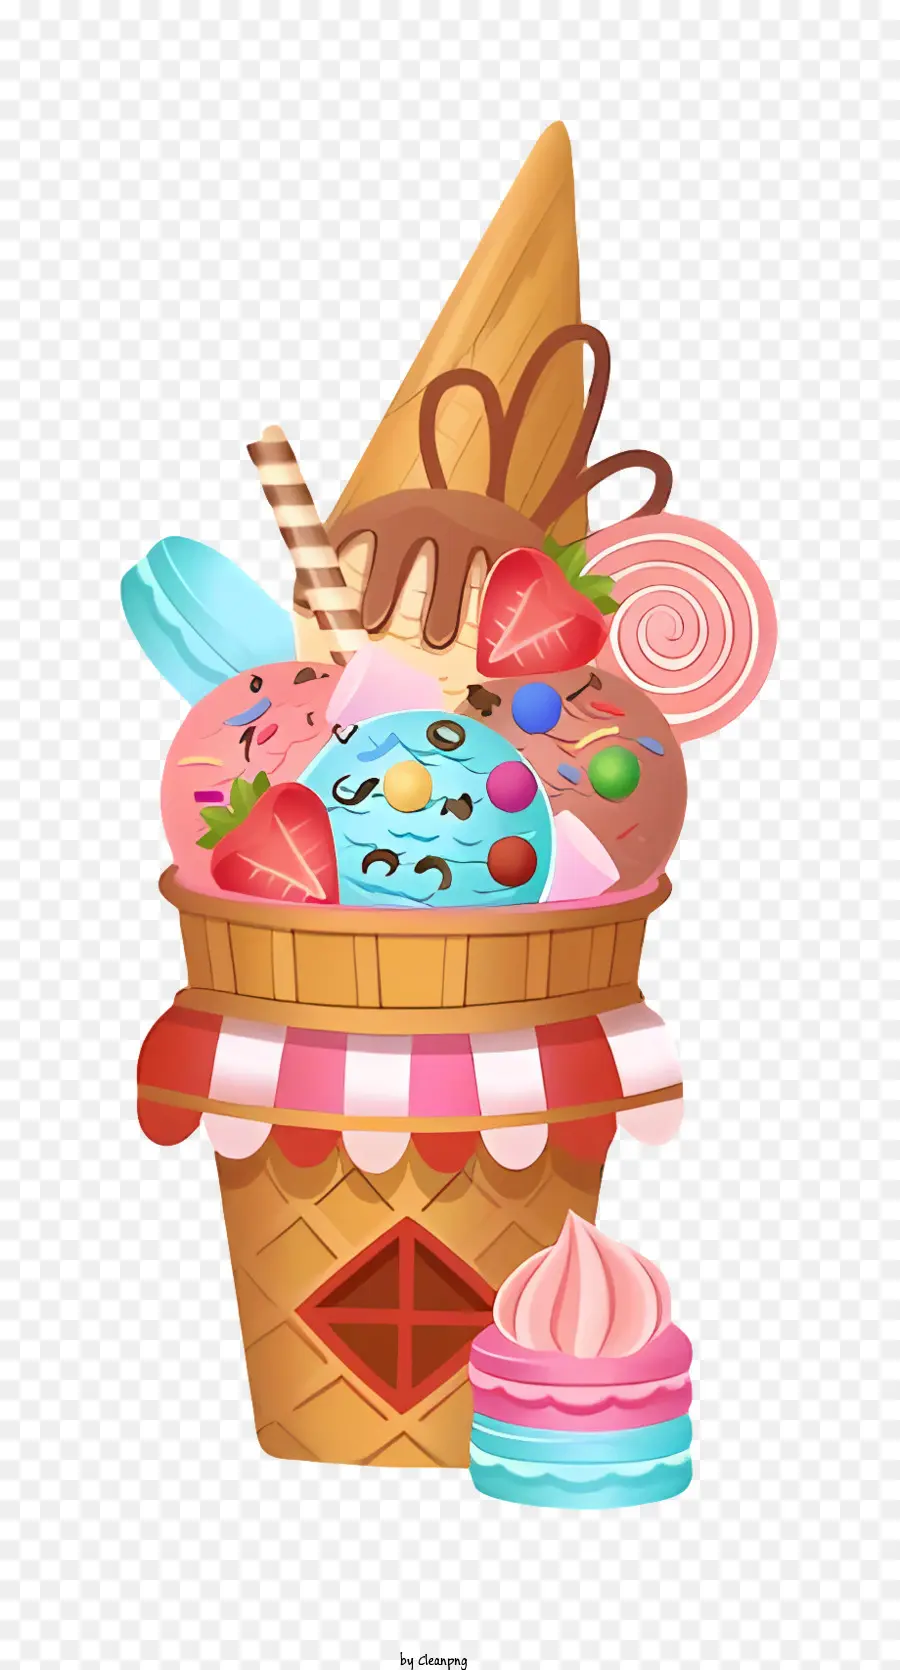 Rắc - Kem kem ngọt ngào với nhiều loại toppings khác nhau